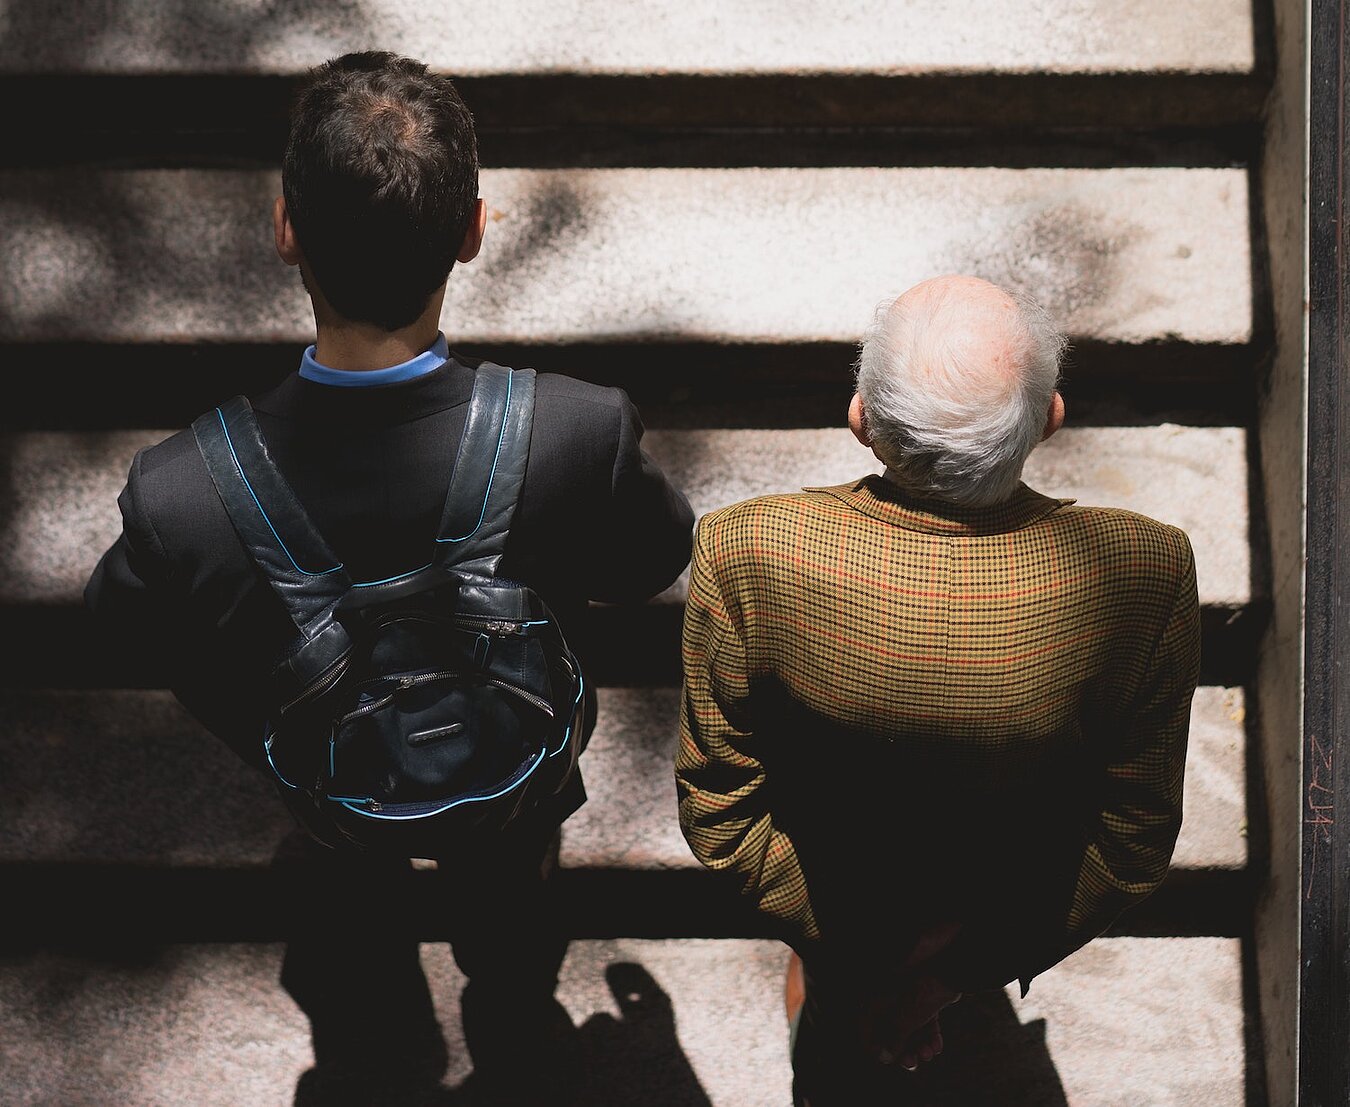 Ein junger Mann mit Rucksack und ein älterer Mann mit grauen Haaren und Glatze gehen eine Treppe hoch, Perspektive von oben auf die Köpfe